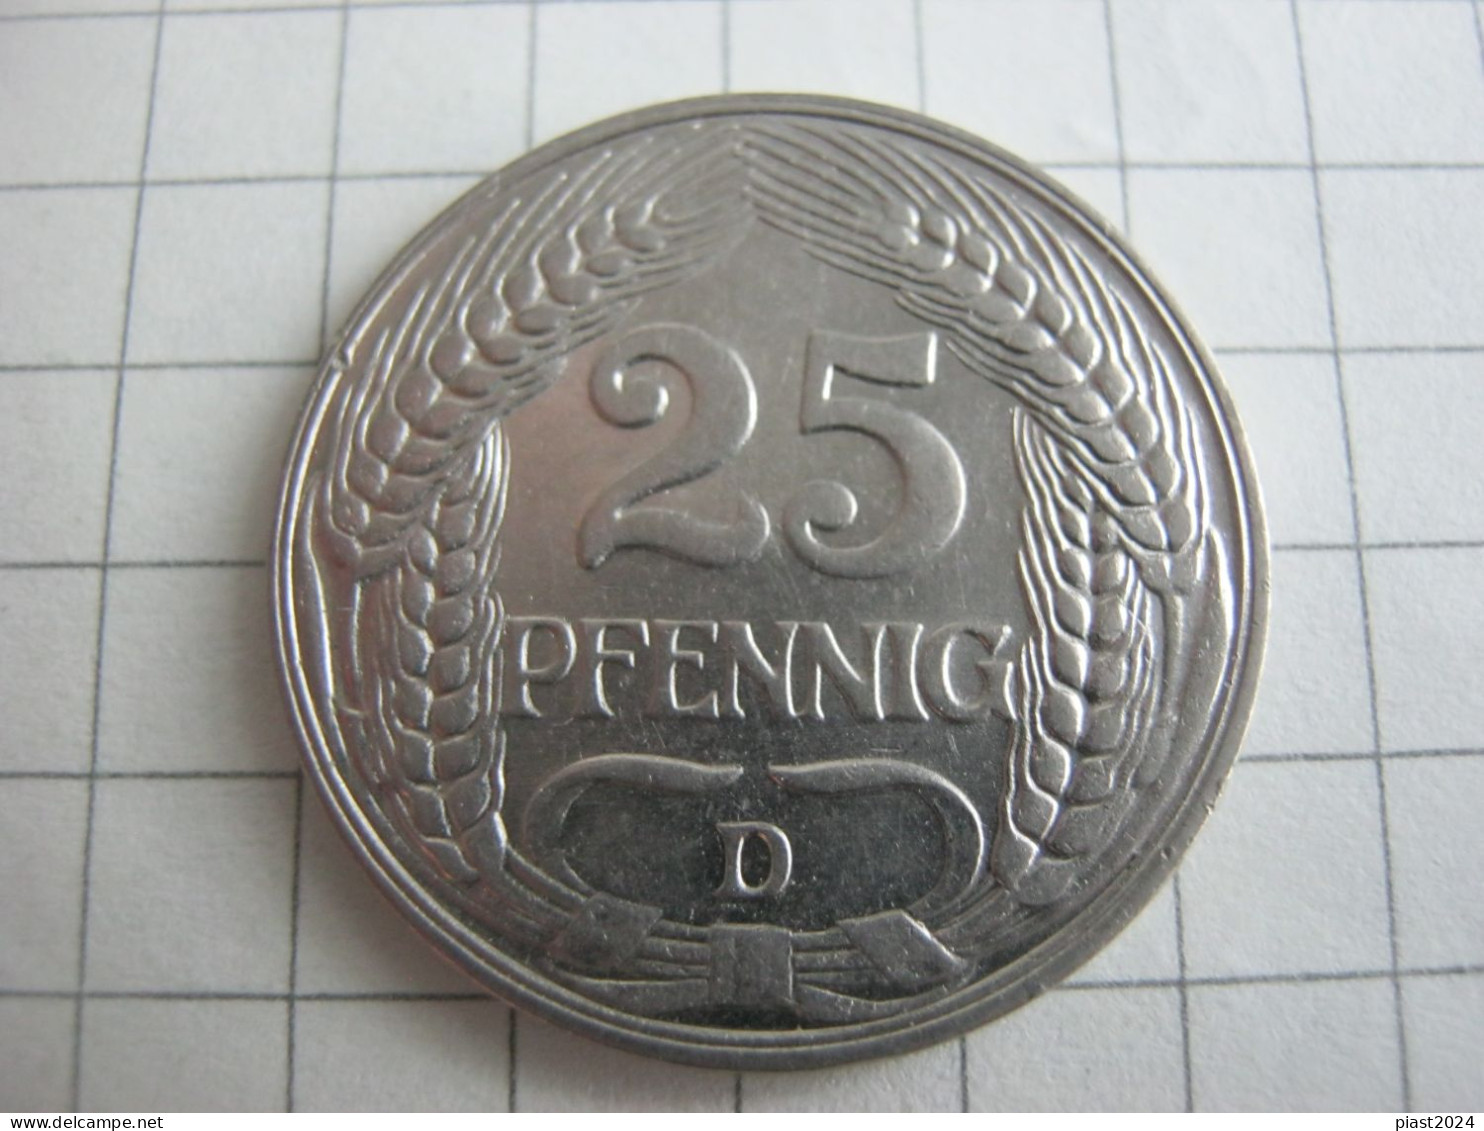 Germany 25 Pfennig 1912 D - 25 Pfennig